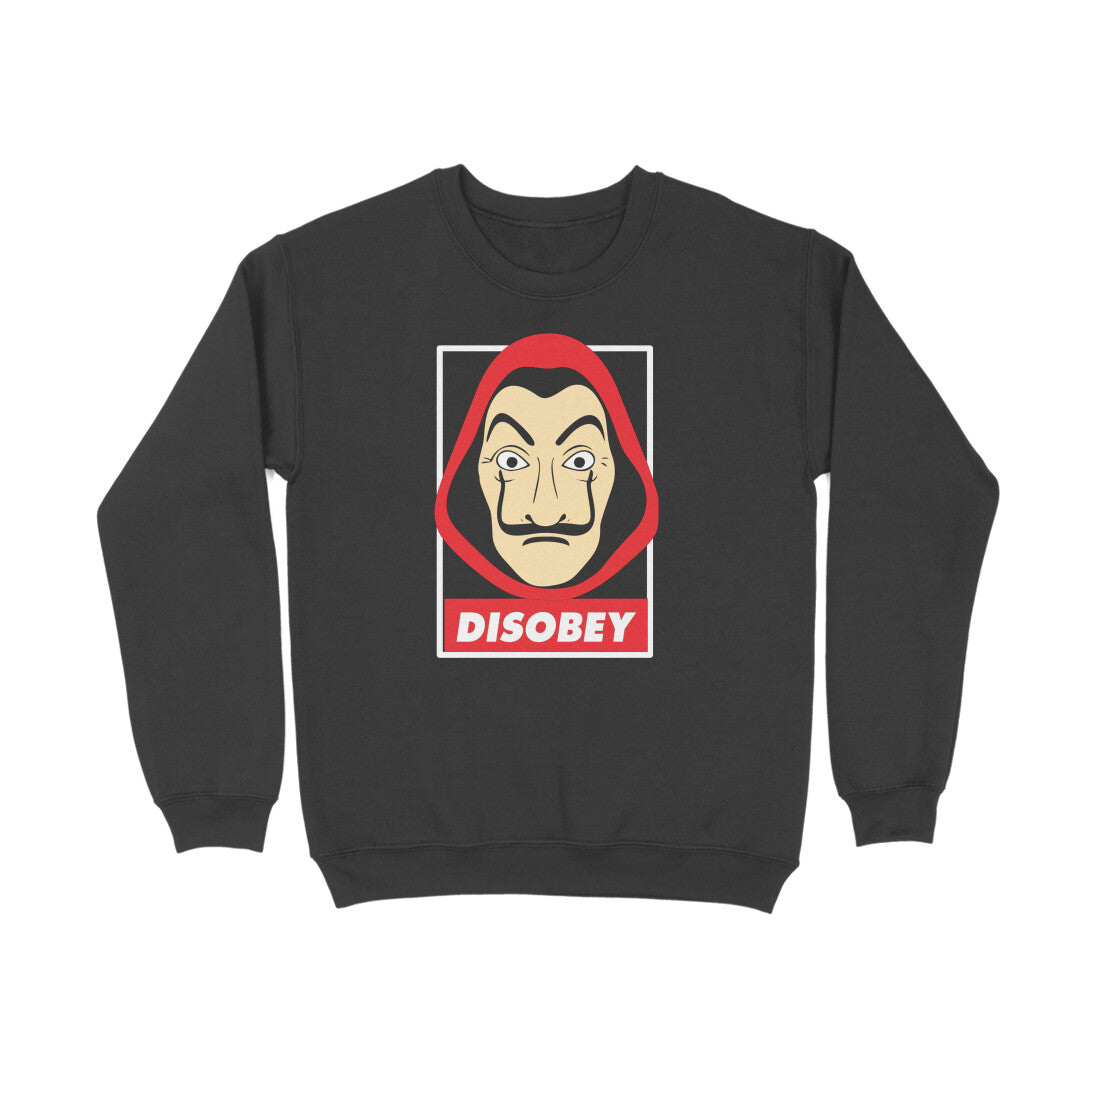 DISOBEY- Money Heist Sweatshirt